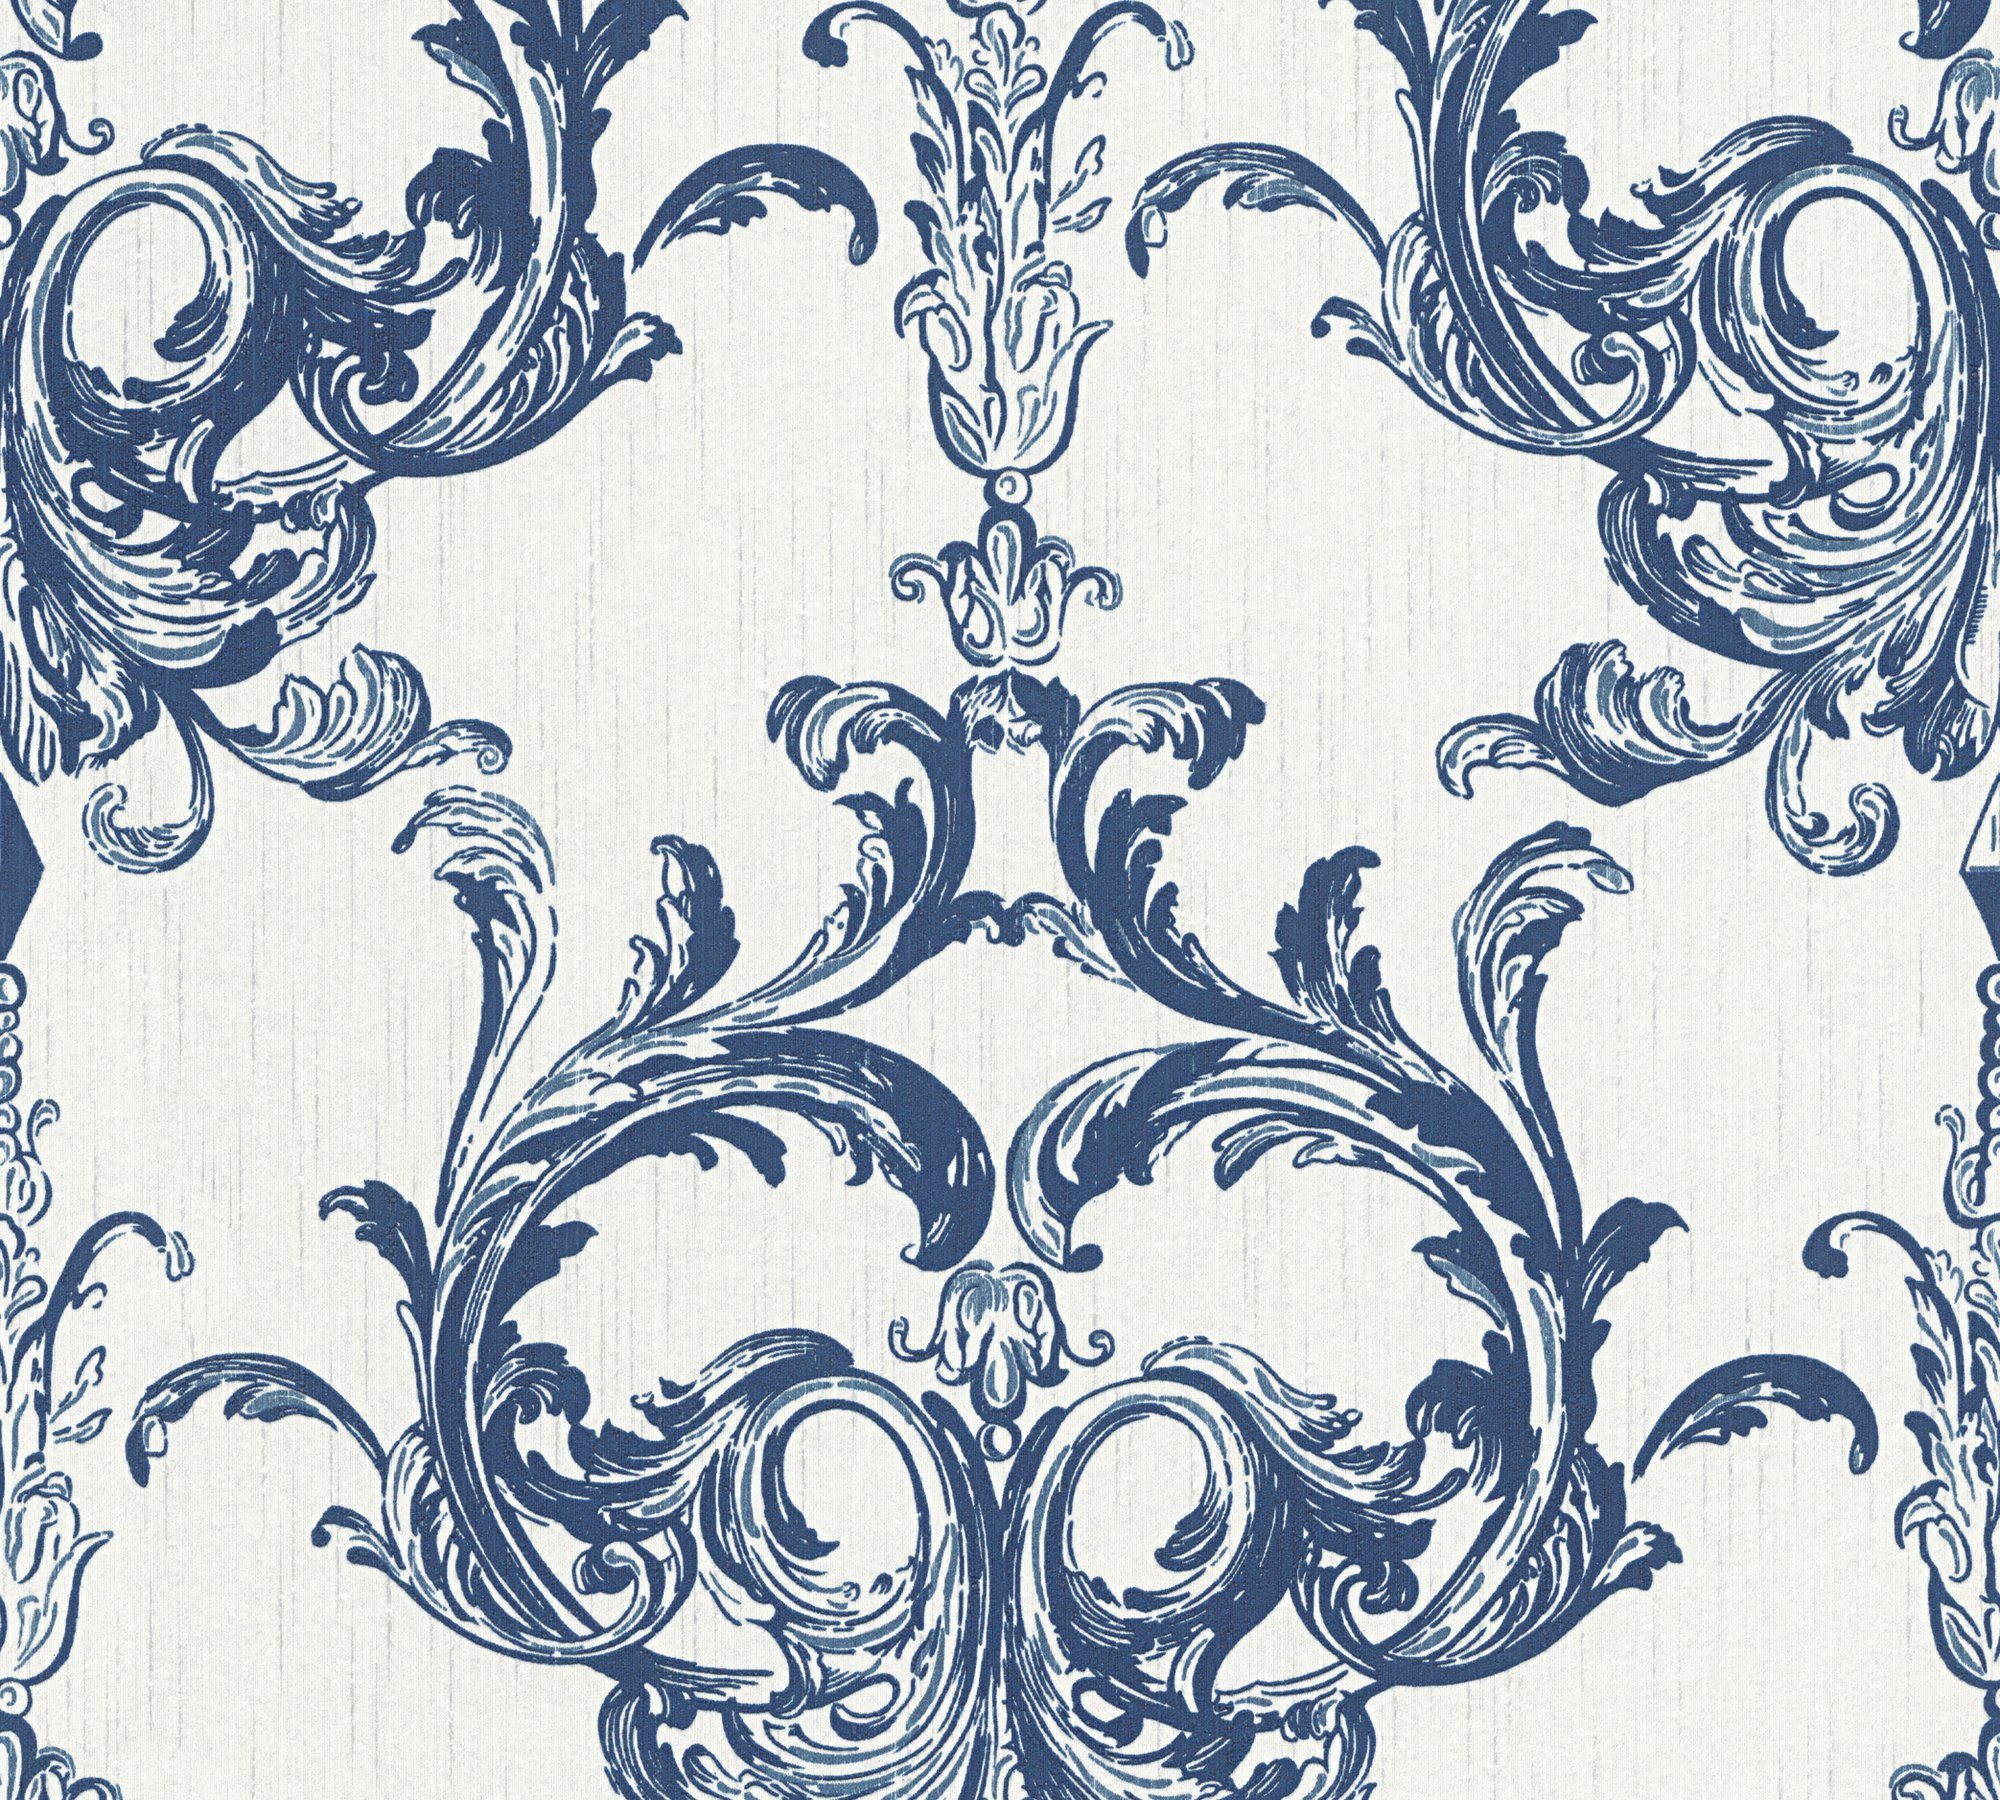 Tessuto, Architects samtig, Paper Création Streifen Barock, Tapete blau/weiß A.S. Textiltapete